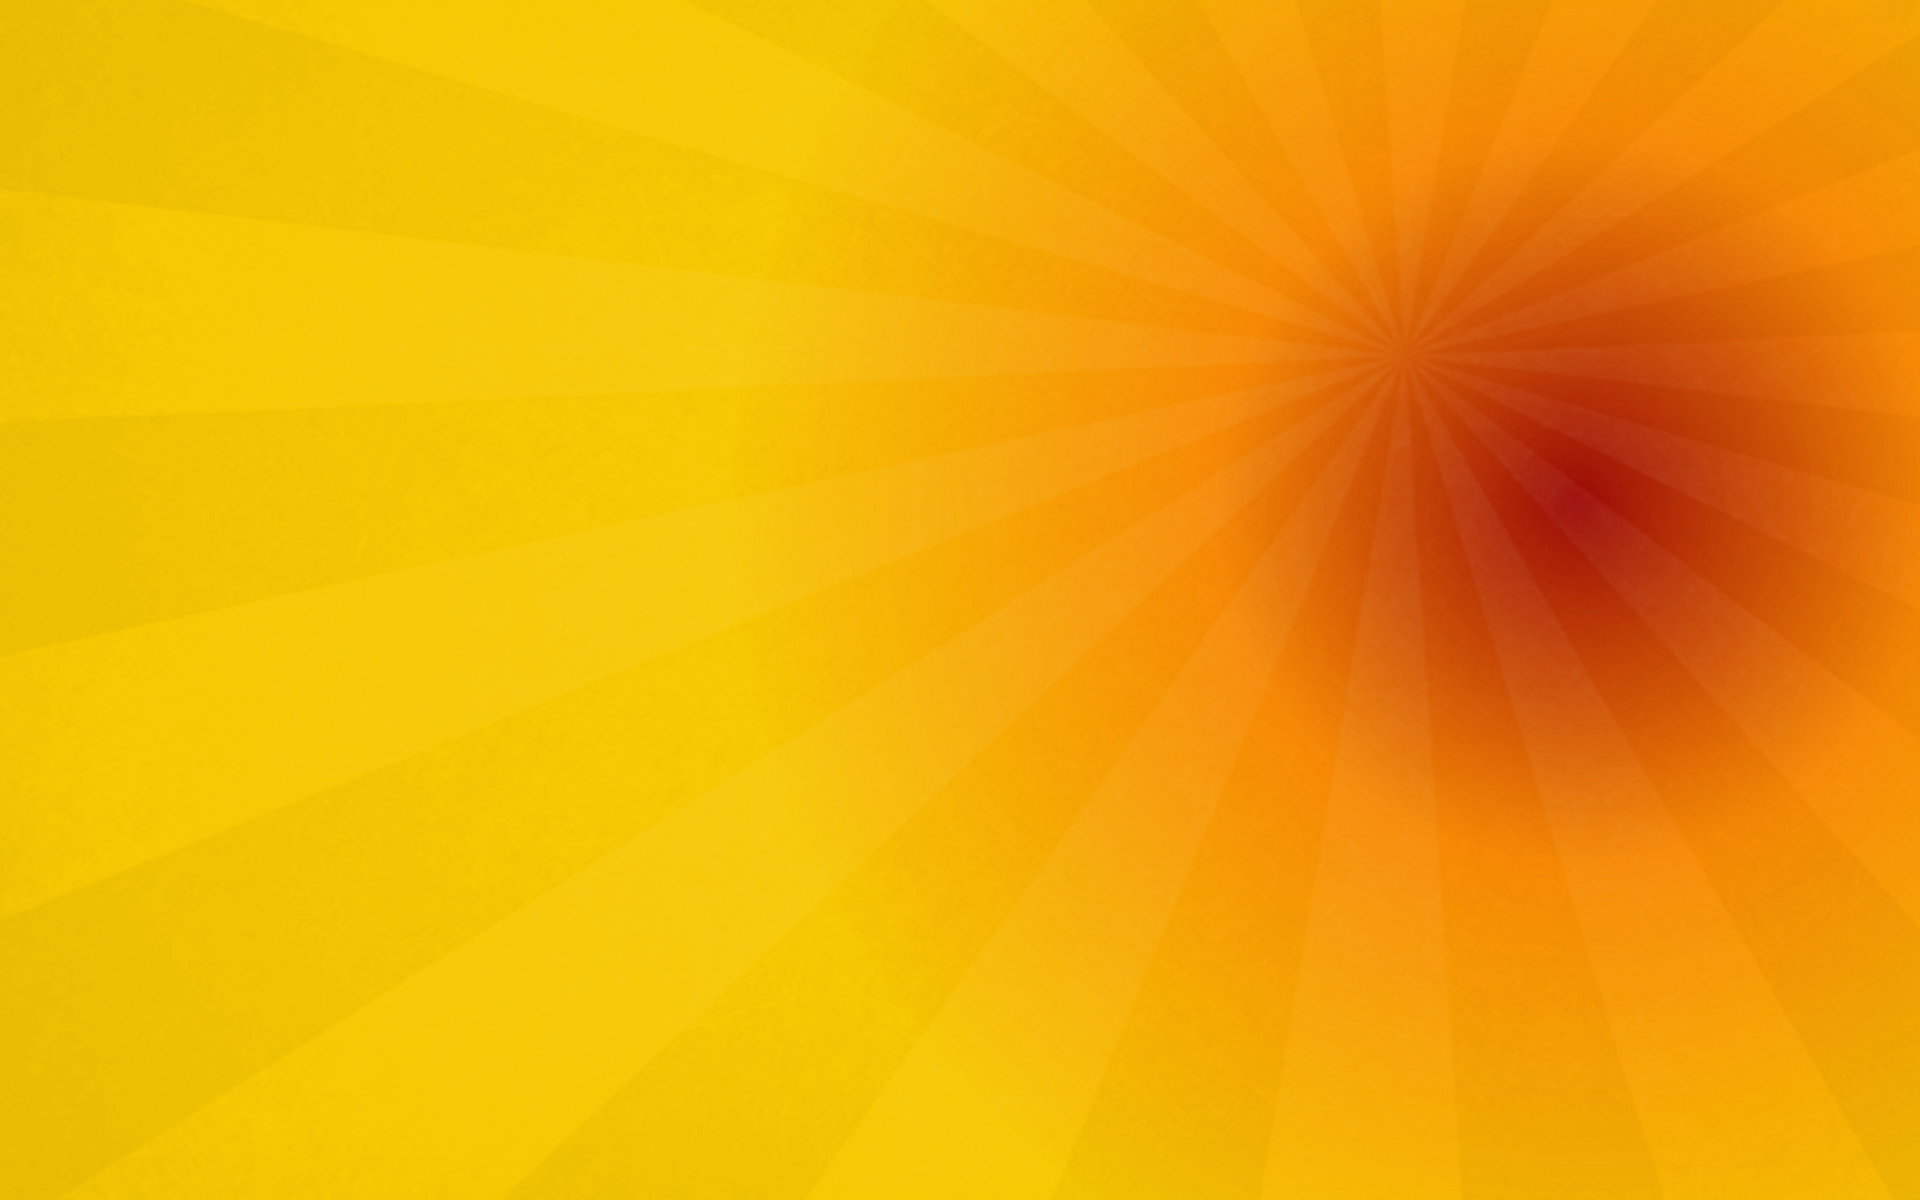 Скачать обои бесплатно Солнце, Художественный, Жёлтый, Абстрактные, Оранжевый Цвет) картинка на рабочий стол ПК